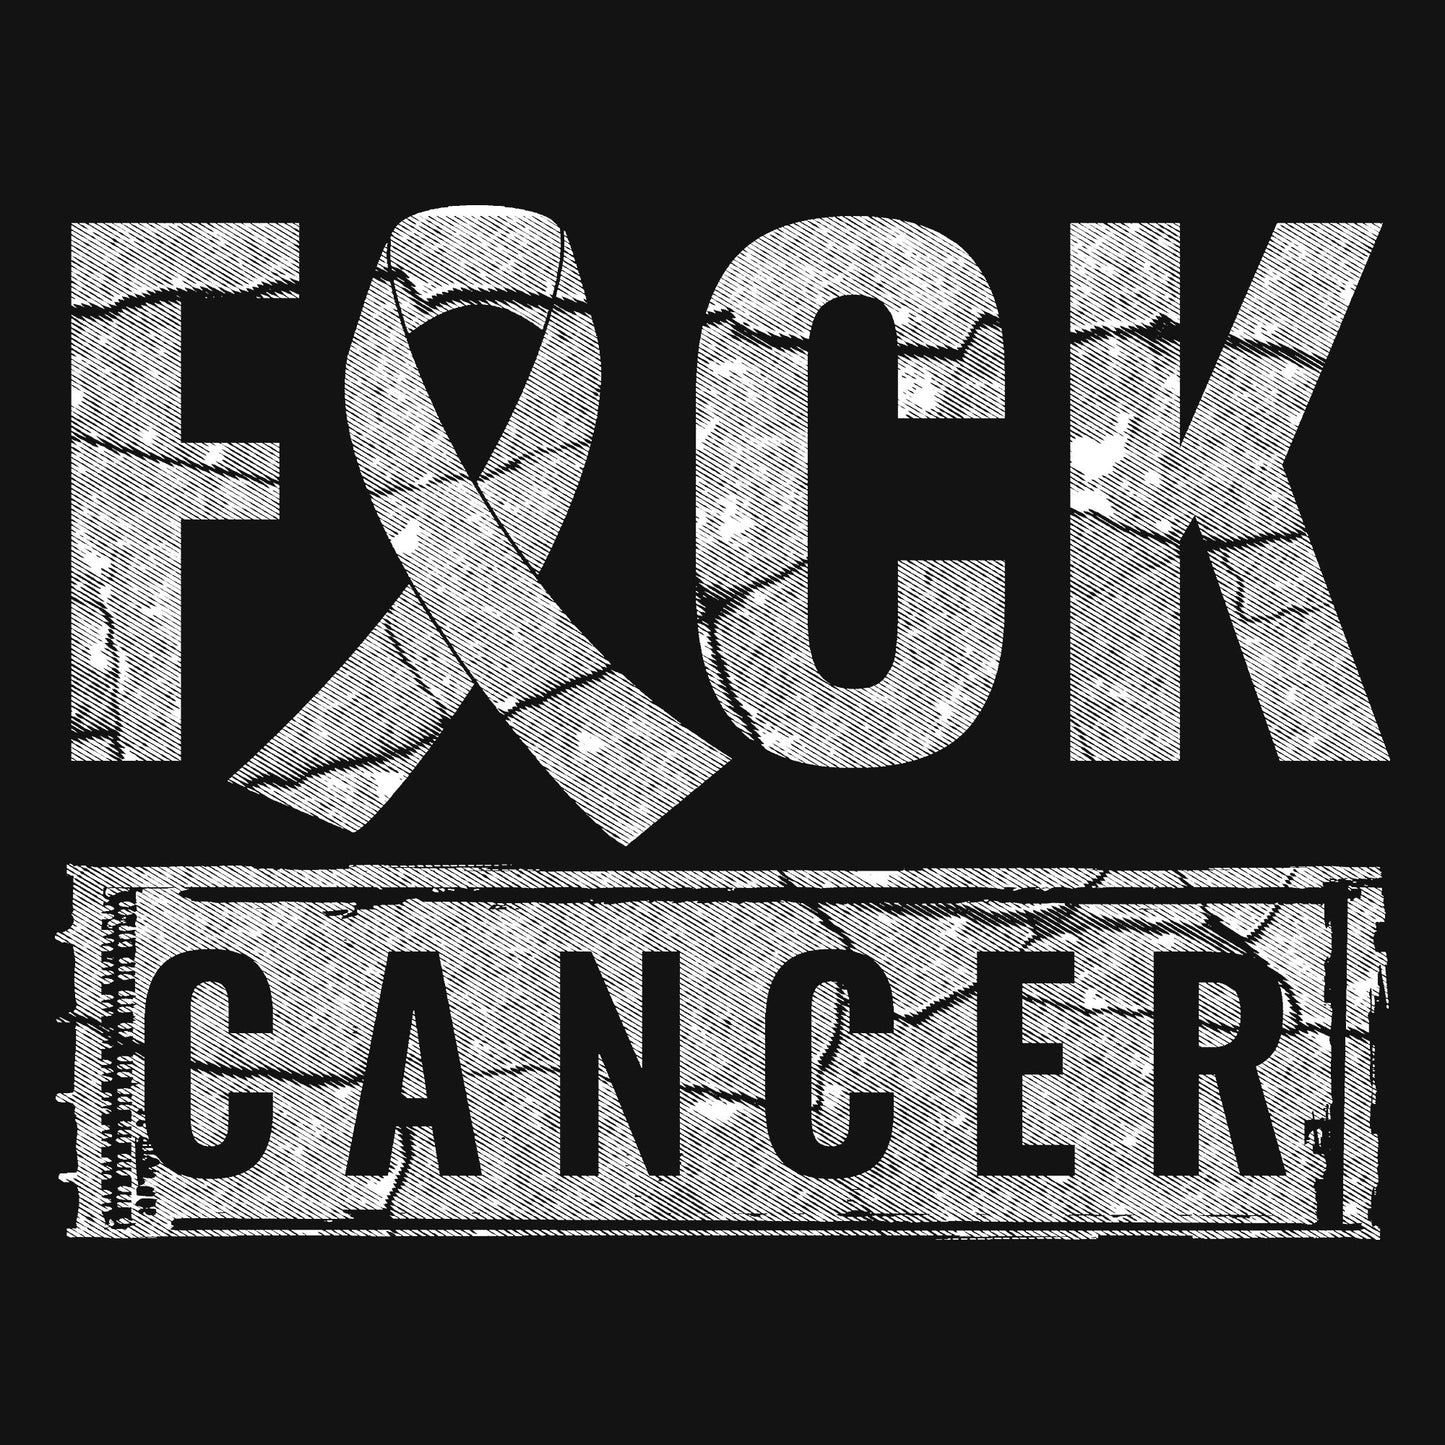 Fck Cancer 